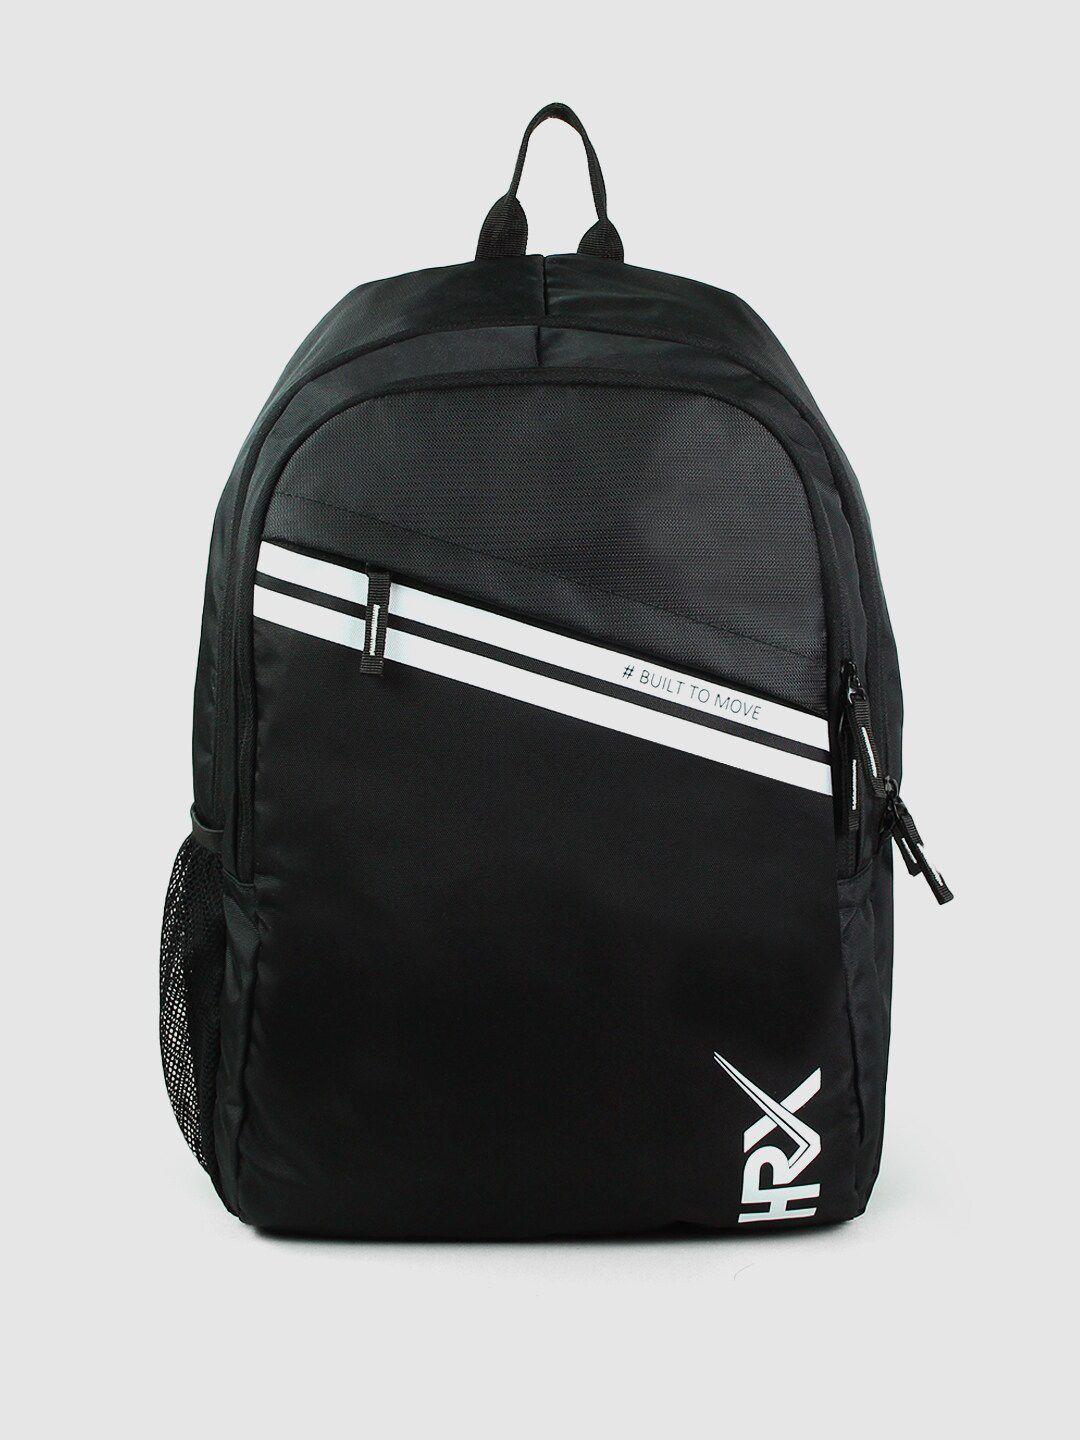 hrx by hrithik roshan black & white medium size backpack